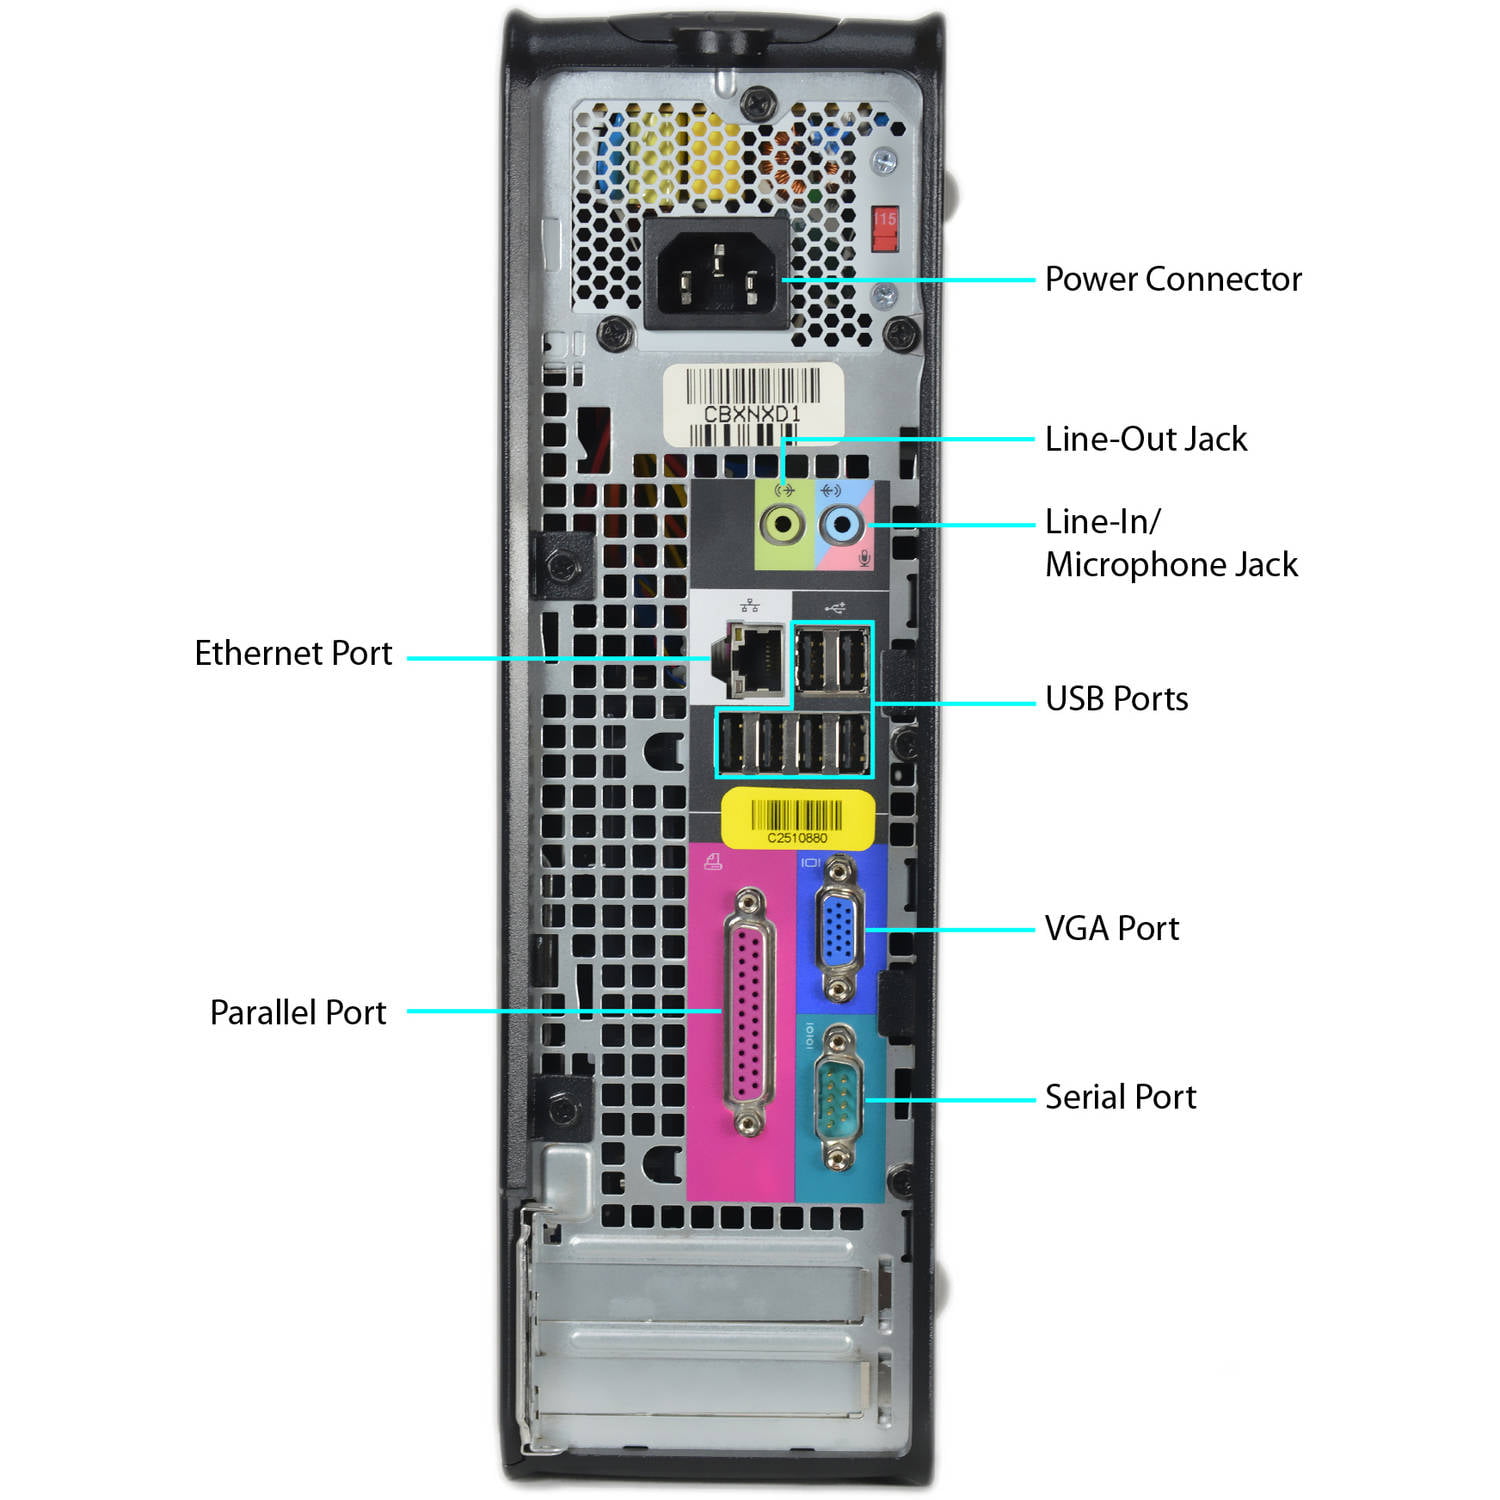 DELL OPTIPLEX 755 WINDOWS 7 PCI SERIAL PORT DRIVER FOR MAC DOWNLOAD